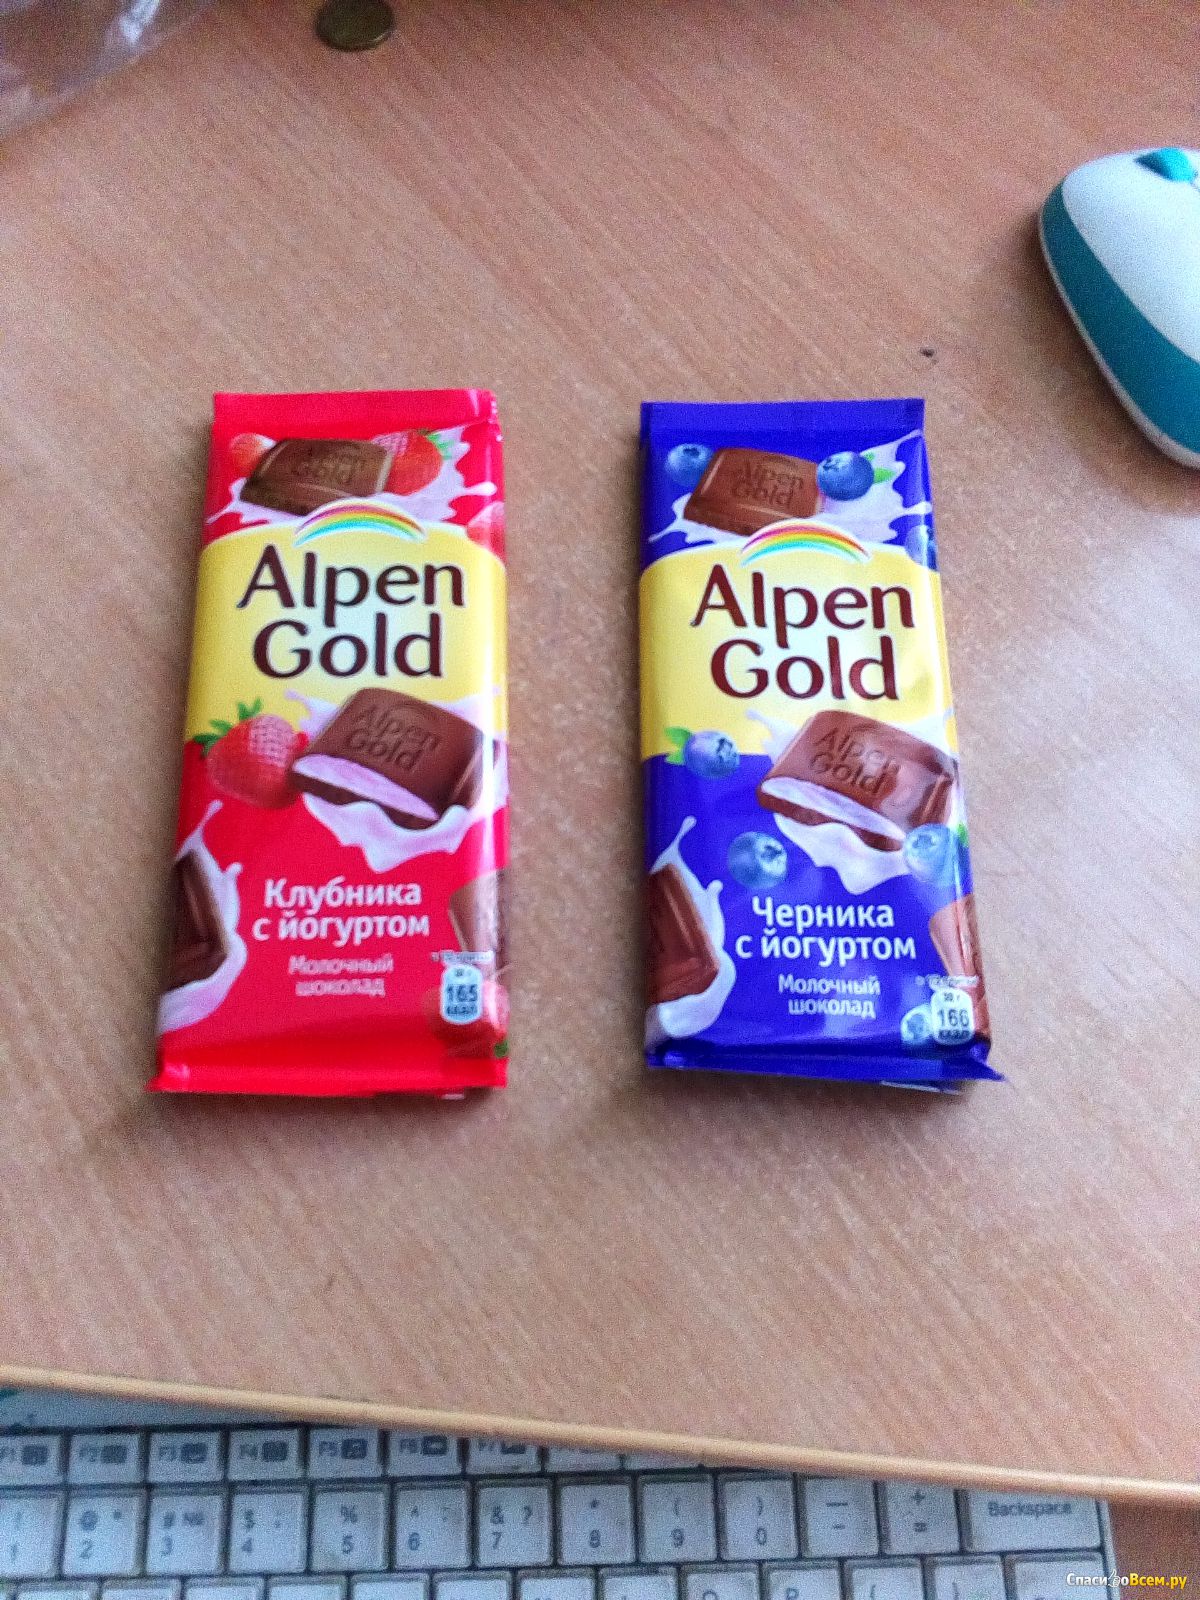 3 вкуса шоколада. Вкусы шоколада Альпен Гольд. Шоколадка Альпен Гольд. Шоколадки Альпен Гольд вкусы. Альпингольд шоколад вкусы.